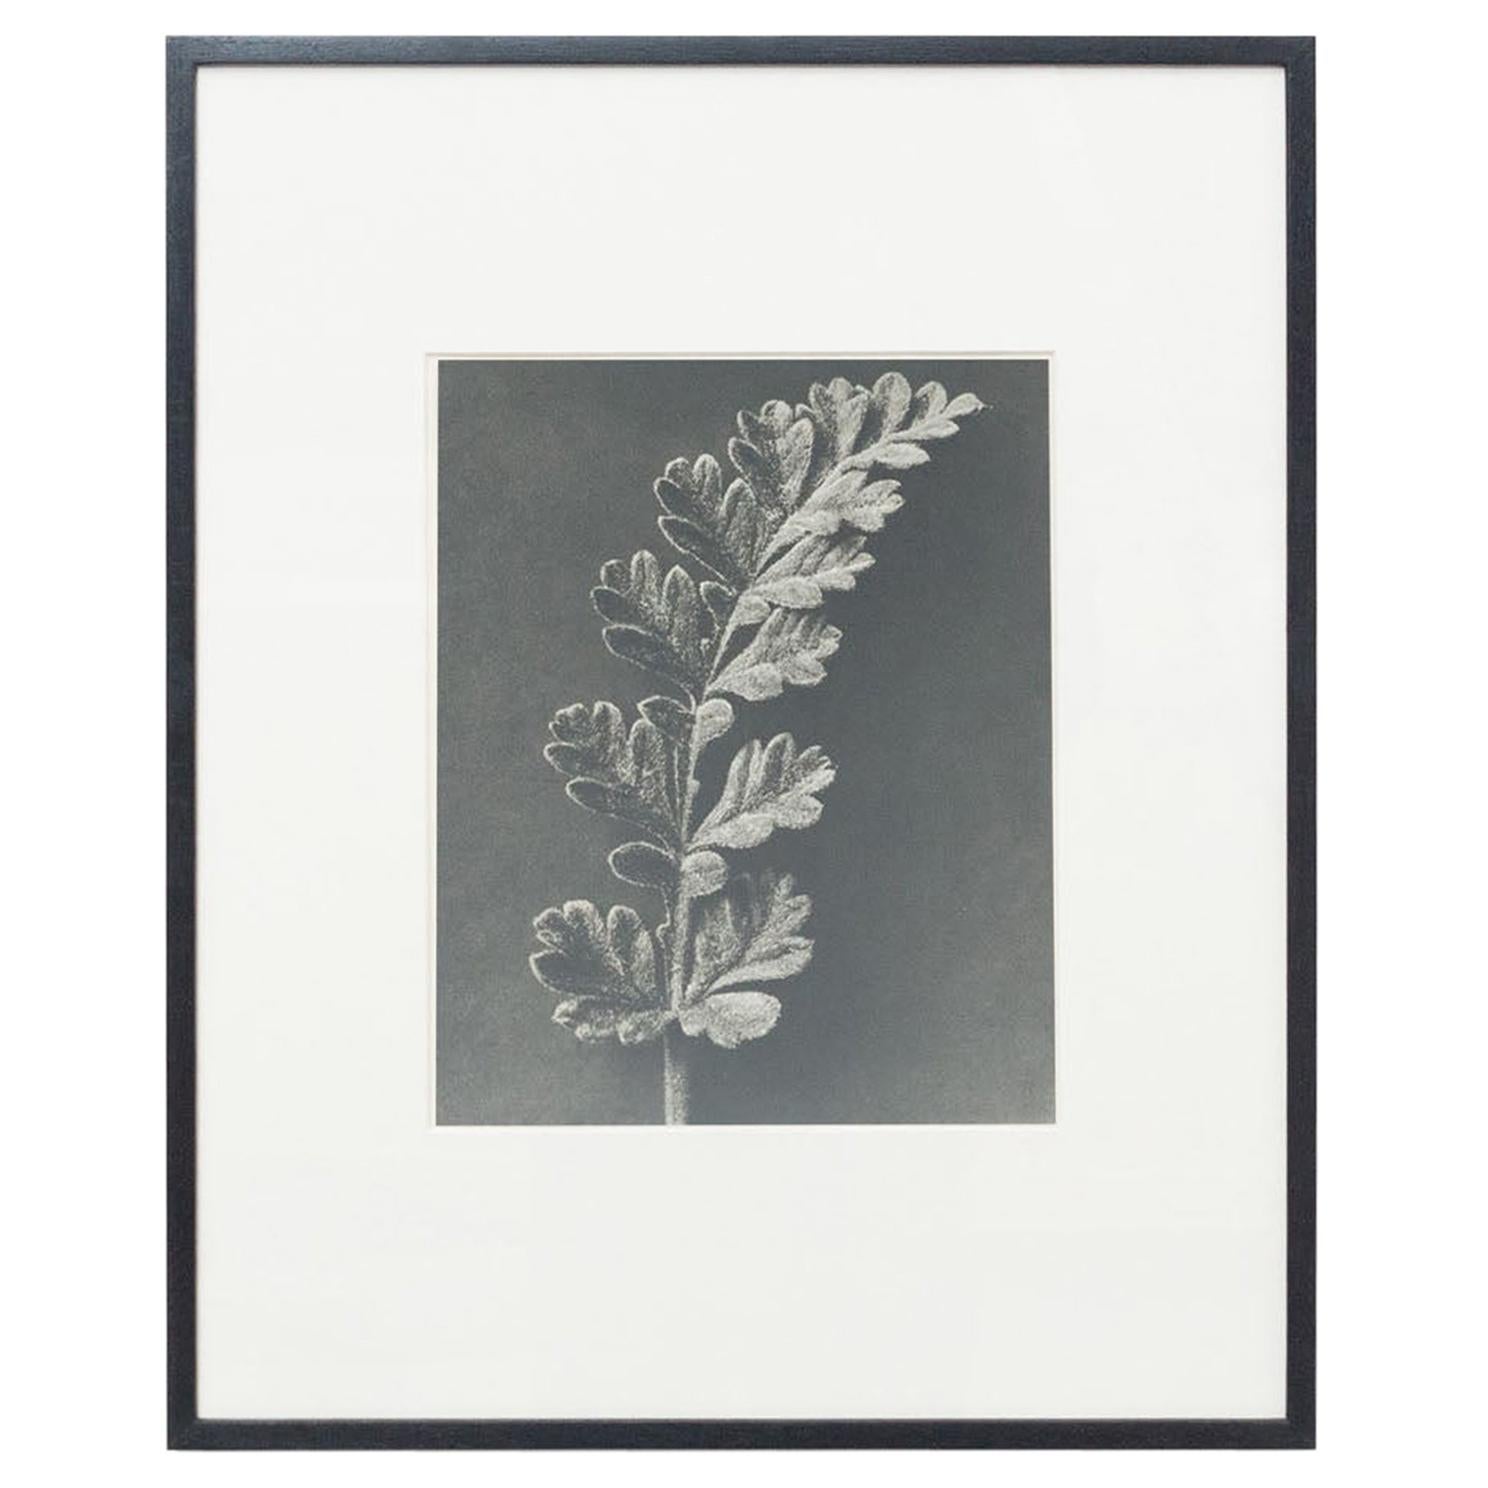 Karl Blossfeldt, photogravure de fleurs noires et blanches, photographie botanique, 1942